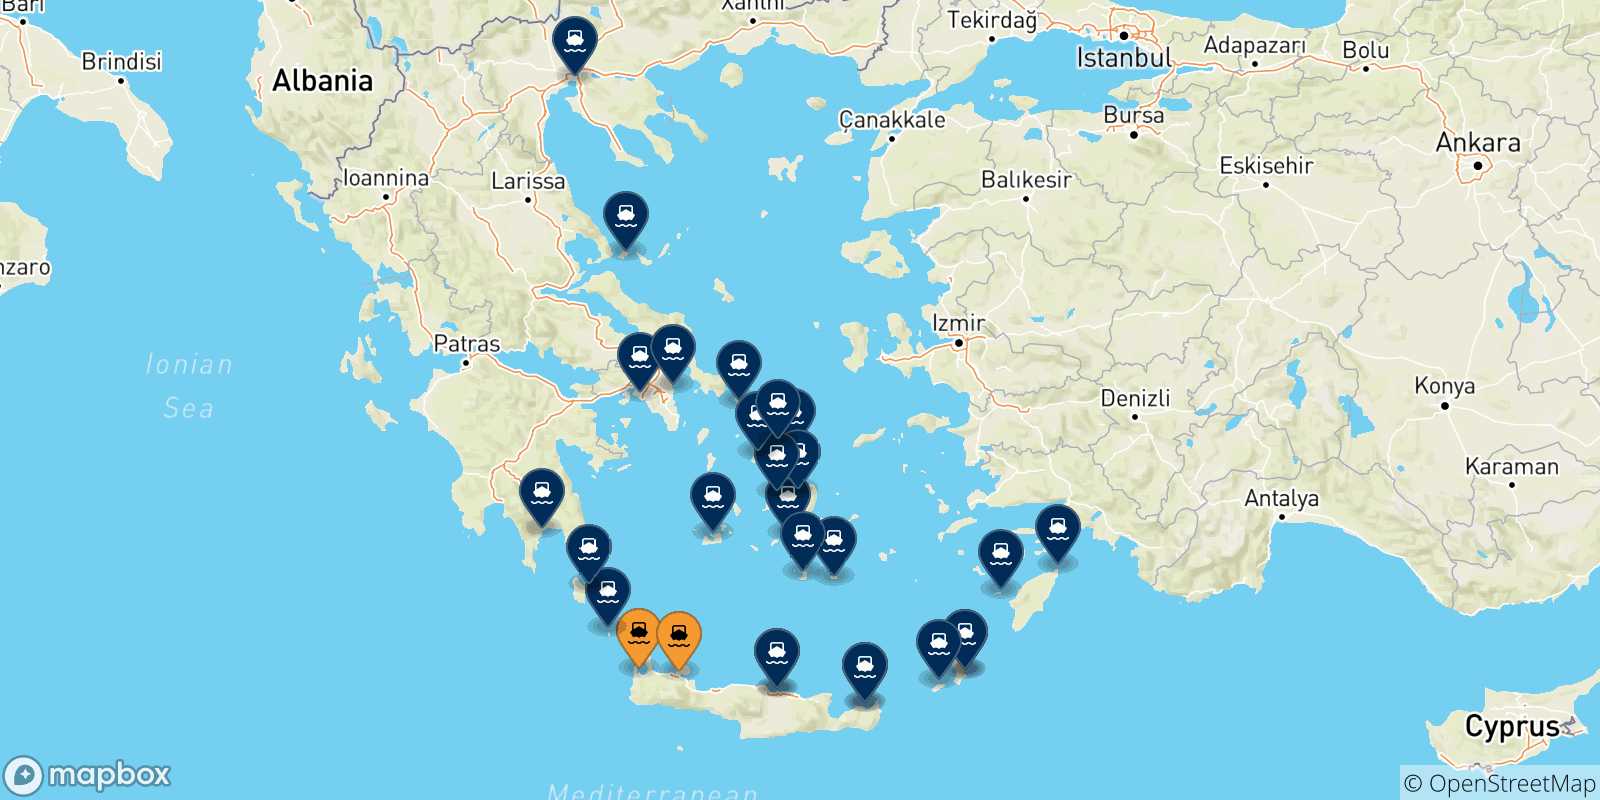 Mappa delle destinazioni raggiungibili da Creta